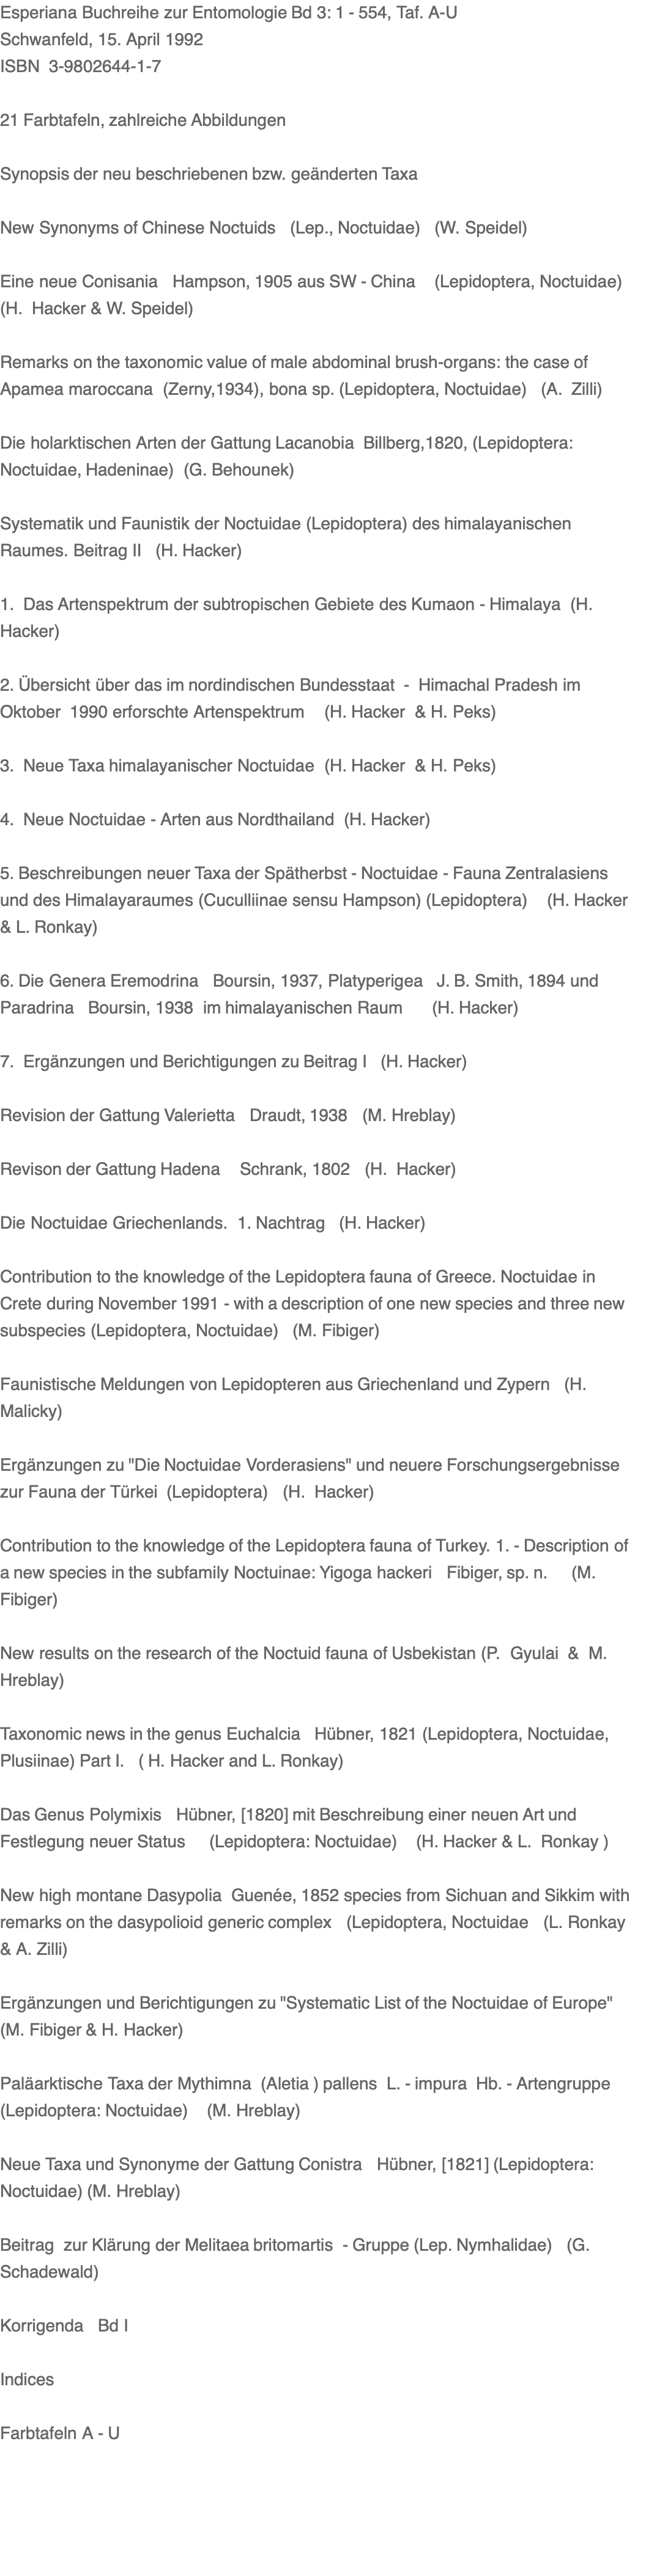 Esperiana Buchreihe zur Entomologie Bd 3: 1 - 554, Taf. A-U Schwanfeld, 15. April 1992 ISBN  3-9802644-1-7  21 Farbtafeln, zahlreiche Abbildungen  Synopsis der neu beschriebenen bzw. geänderten Taxa  New Synonyms of Chinese Noctuids   (Lep., Noctuidae)   (W. Speidel)  Eine neue Conisania   Hampson, 1905 aus SW - China    (Lepidoptera, Noctuidae) (H.  Hacker & W. Speidel)   Remarks on the taxonomic value of male abdominal brush-organs: the case of Apamea maroccana  (Zerny,1934), bona sp. (Lepidoptera, Noctuidae)   (A.  Zilli)  Die holarktischen Arten der Gattung Lacanobia  Billberg,1820, (Lepidoptera: Noctuidae, Hadeninae)  (G. Behounek)  Systematik und Faunistik der Noctuidae (Lepidoptera) des himalayanischen Raumes. Beitrag II   (H. Hacker)  1.  Das Artenspektrum der subtropischen Gebiete des Kumaon - Himalaya  (H. Hacker)  2. Übersicht über das im nordindischen Bundesstaat  -  Himachal Pradesh im Oktober  1990 erforschte Artenspektrum    (H. Hacker  & H. Peks)  3.  Neue Taxa himalayanischer Noctuidae  (H. Hacker  & H. Peks)  4.  Neue Noctuidae - Arten aus Nordthailand  (H. Hacker)   5. Beschreibungen neuer Taxa der Spätherbst - Noctuidae - Fauna Zentralasiens und des Himalayaraumes (Cuculliinae sensu Hampson) (Lepidoptera)    (H. Hacker & L. Ronkay)   6. Die Genera Eremodrina   Boursin, 1937, Platyperigea   J. B. Smith, 1894 und Paradrina   Boursin, 1938  im himalayanischen Raum      (H. Hacker)  7.  Ergänzungen und Berichtigungen zu Beitrag I   (H. Hacker)   Revision der Gattung Valerietta   Draudt, 1938   (M. Hreblay)   Revison der Gattung Hadena    Schrank, 1802   (H.  Hacker)  Die Noctuidae Griechenlands.  1. Nachtrag   (H. Hacker)   Contribution to the knowledge of the Lepidoptera fauna of Greece. Noctuidae in Crete during November 1991 - with a description of one new species and three new subspecies (Lepidoptera, Noctuidae)   (M. Fibiger)   Faunistische Meldungen von Lepidopteren aus Griechenland und Zypern   (H.  Malicky)  Ergänzungen zu "Die Noctuidae Vorderasiens" und neuere Forschungsergebnisse zur Fauna der Türkei  (Lepidoptera)   (H.  Hacker)  Contribution to the knowledge of the Lepidoptera fauna of Turkey. 1. - Description of a new species in the subfamily Noctuinae: Yigoga hackeri   Fibiger, sp. n.     (M.  Fibiger)  New results on the research of the Noctuid fauna of Usbekistan (P.  Gyulai  &  M. Hreblay)  Taxonomic news in the genus Euchalcia   Hübner, 1821 (Lepidoptera, Noctuidae, Plusiinae) Part I.   ( H. Hacker and L. Ronkay)   Das Genus Polymixis   Hübner, [1820] mit Beschreibung einer neuen Art und Festlegung neuer Status     (Lepidoptera: Noctuidae)    (H. Hacker & L.  Ronkay )   New high montane Dasypolia  Guenée, 1852 species from Sichuan and Sikkim with remarks on the dasypolioid generic complex   (Lepidoptera, Noctuidae   (L. Ronkay & A. Zilli)   Ergänzungen und Berichtigungen zu "Systematic List of the Noctuidae of Europe" (M. Fibiger & H. Hacker)   Paläarktische Taxa der Mythimna  (Aletia ) pallens  L. - impura  Hb. - Artengruppe (Lepidoptera: Noctuidae)    (M. Hreblay)   Neue Taxa und Synonyme der Gattung Conistra   Hübner, [1821] (Lepidoptera: Noctuidae) (M. Hreblay)  Beitrag  zur Klärung der Melitaea britomartis  - Gruppe (Lep. Nymhalidae)   (G.  Schadewald)  Korrigenda   Bd I  Indices   Farbtafeln A - U